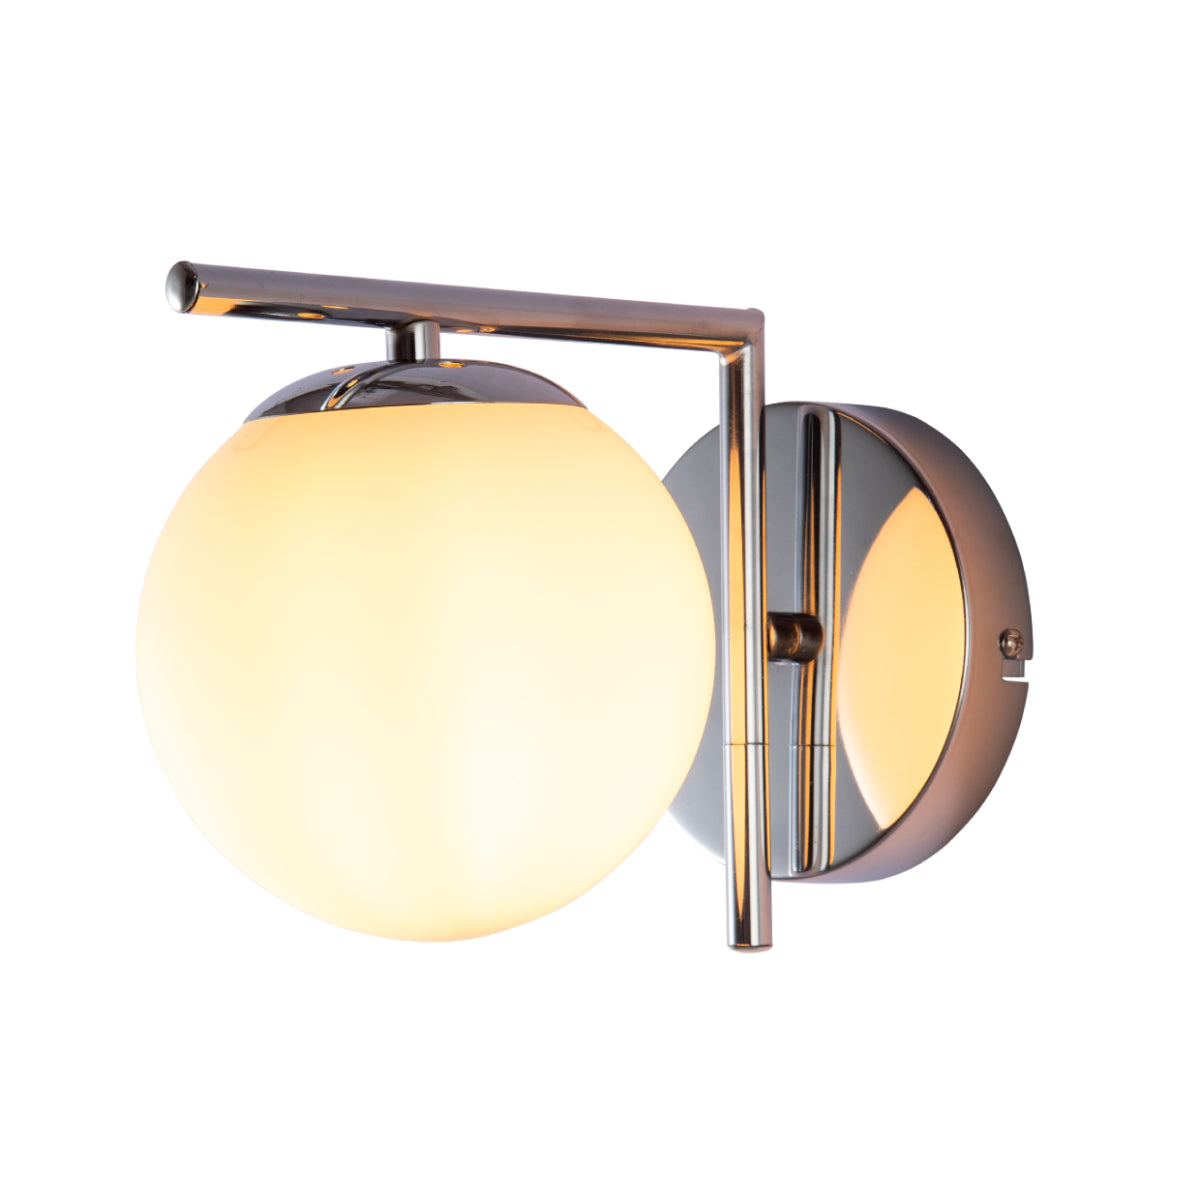 Main image of Opal Globe Glass Chrome L Shape Metal Wall Light with E27 Fitting | TEKLED 151-19940